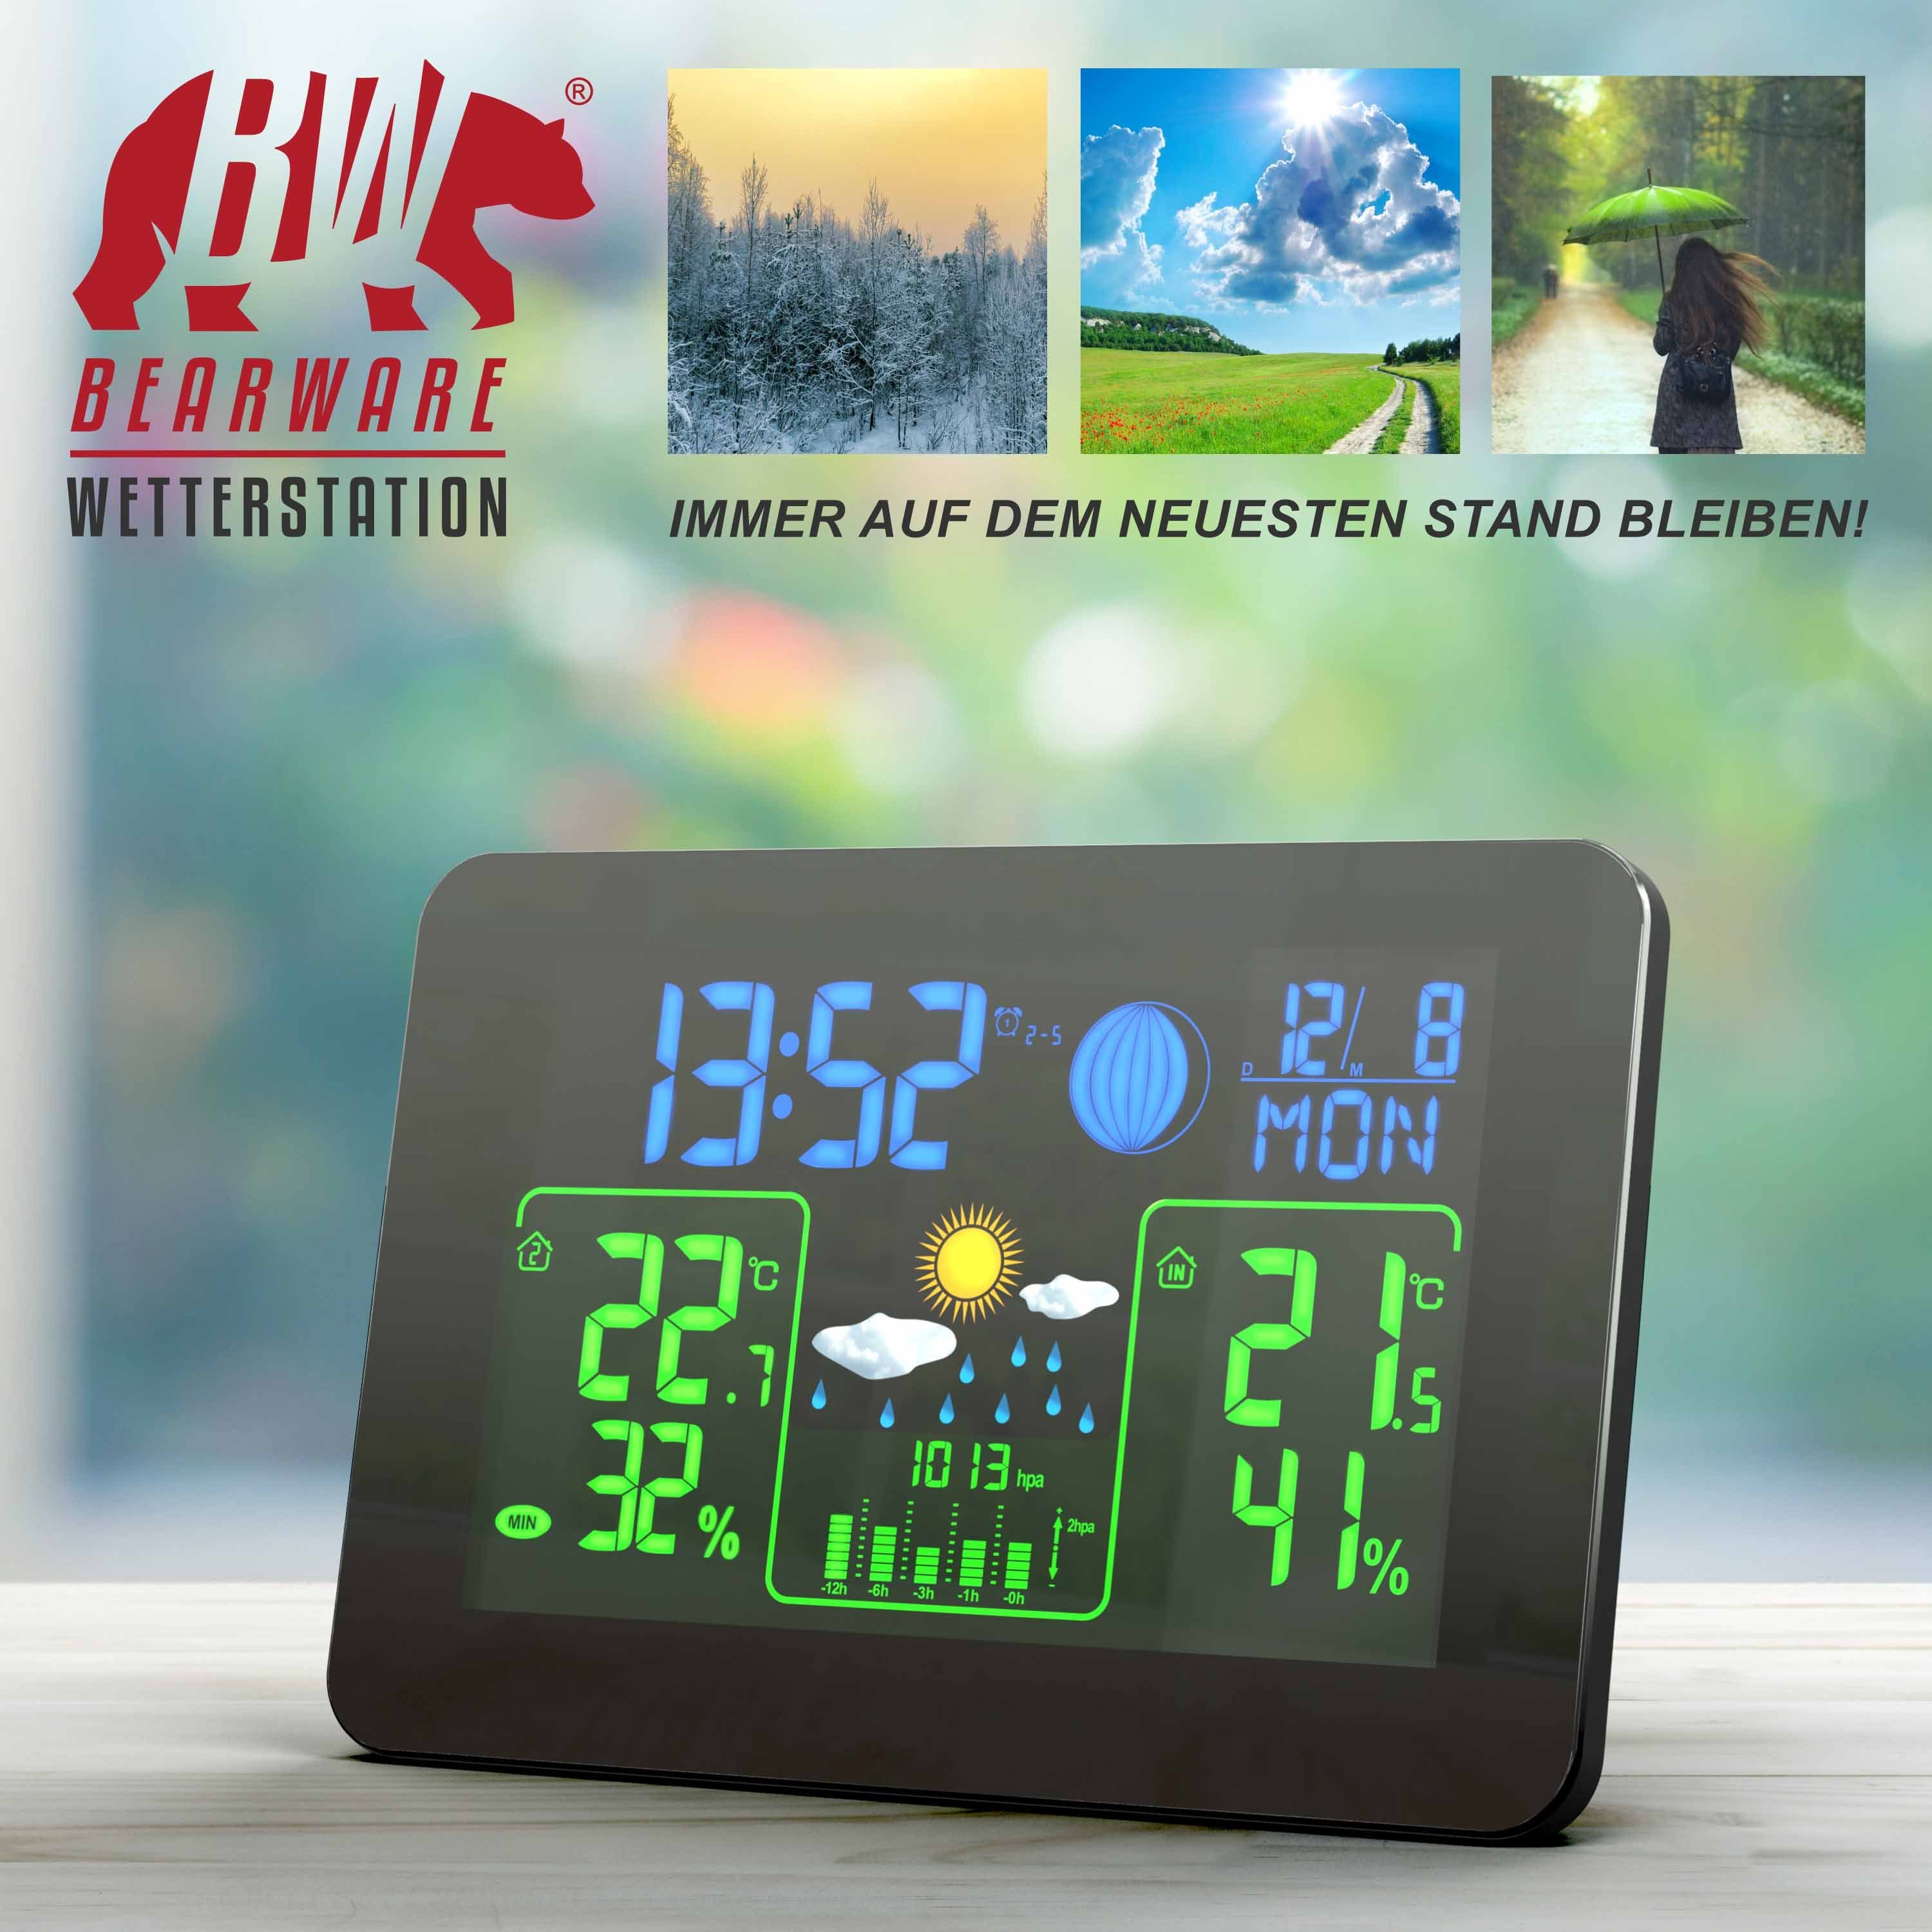 BEARWARE Wetterstation (mit Außensensor, Funk Farb Barometer, & Display mit Wettervorhersage Außensensor uvm)